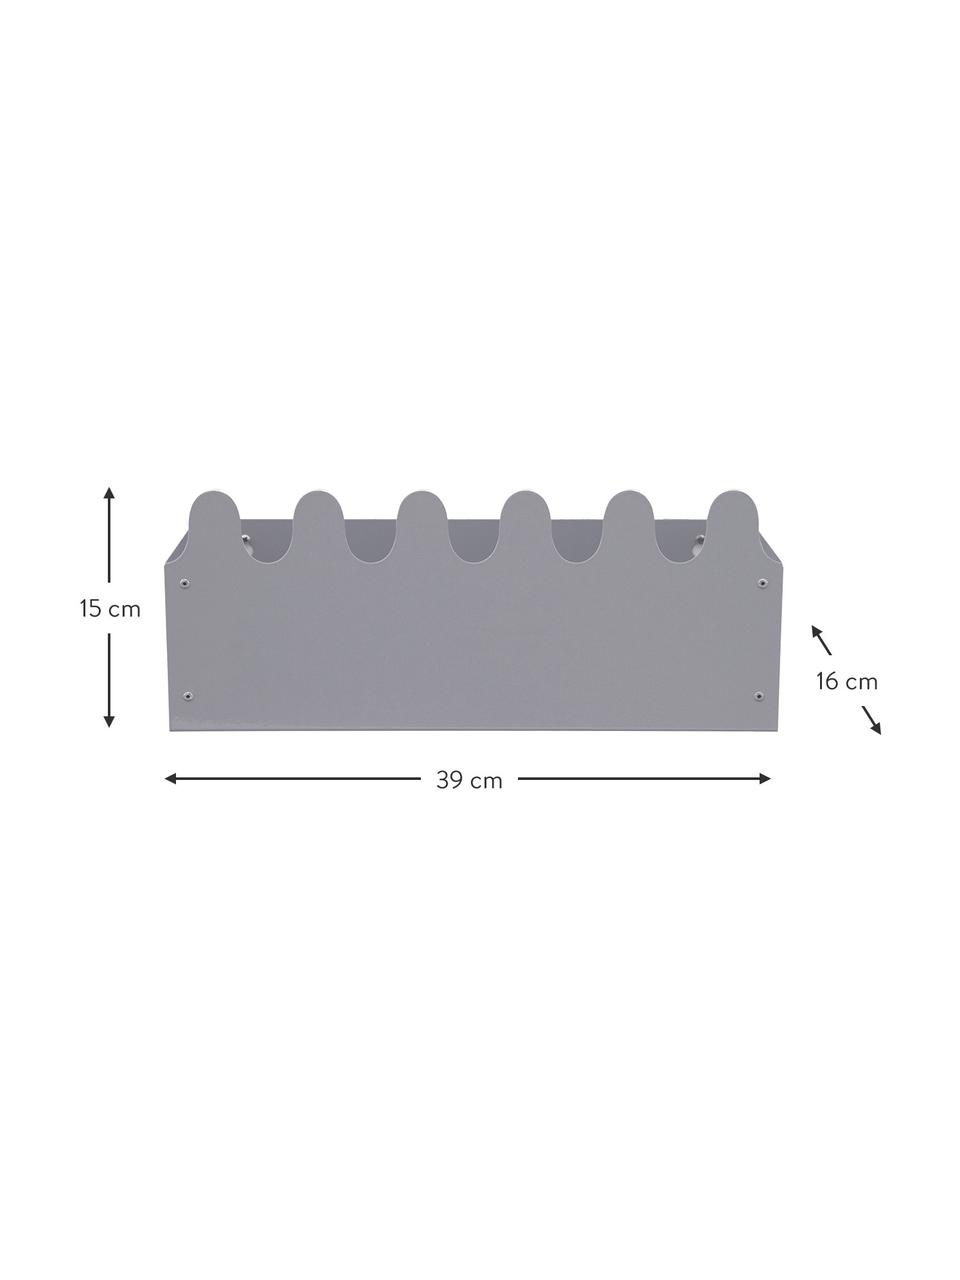 Metall-Wandregal Sinus in Grau, Metall, pulverbeschichtet, Grau, B 39 x H 16 cm